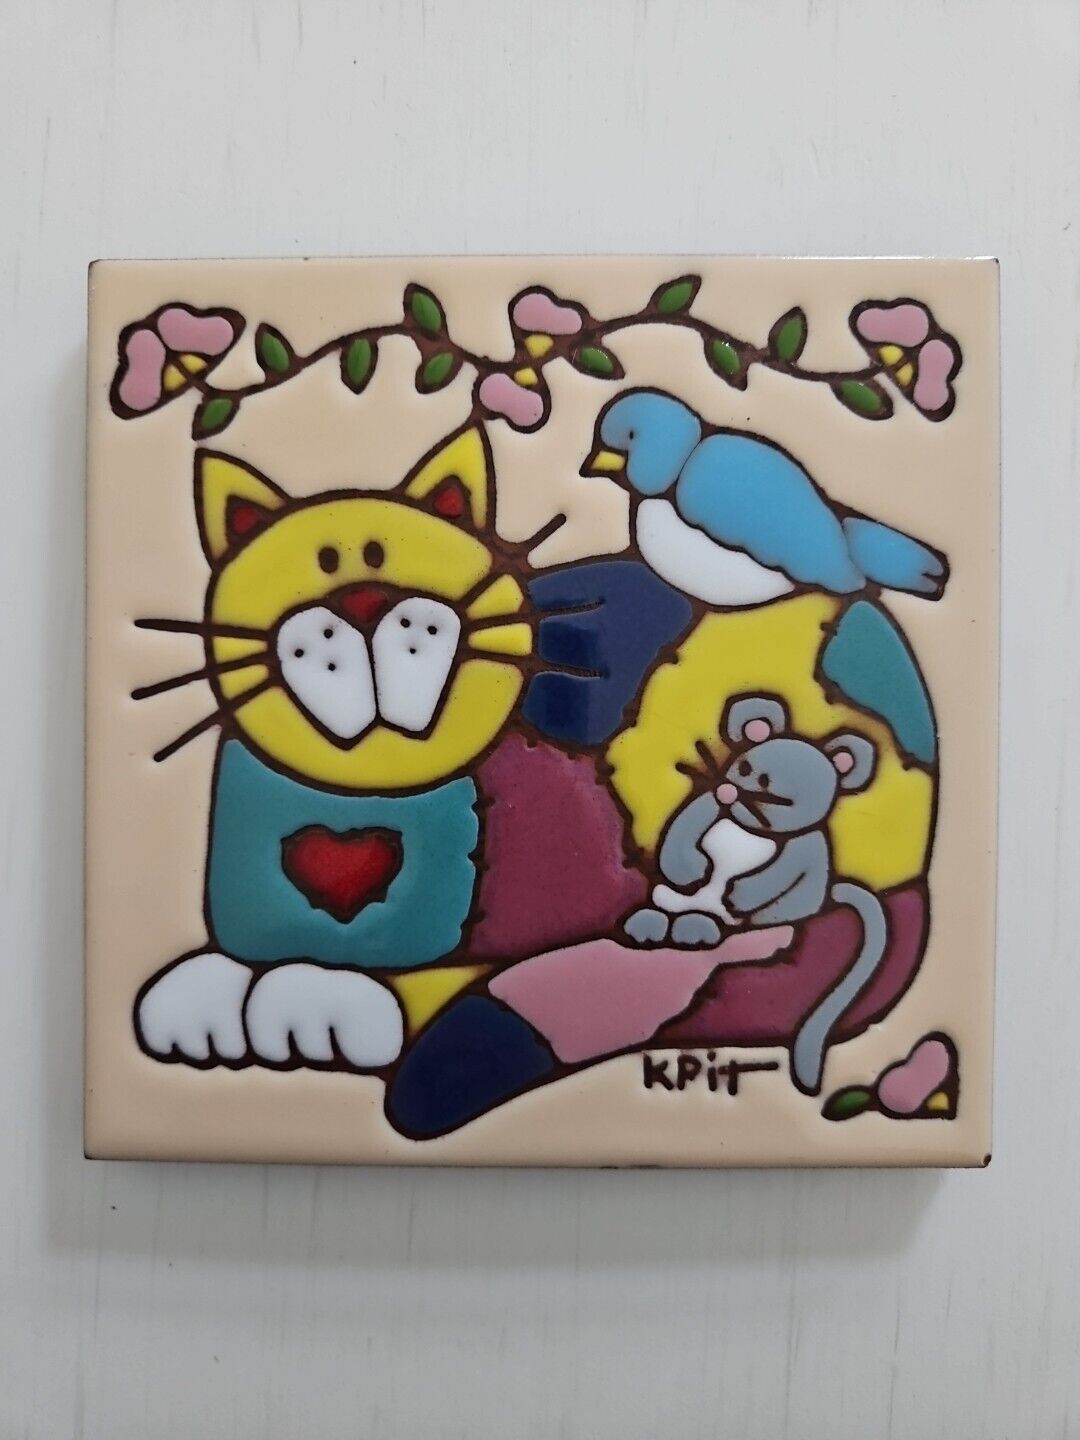 VTG Earthtones Friends Ceramic Tile Trivet Cat Bird Mouse Made In USA Signed 